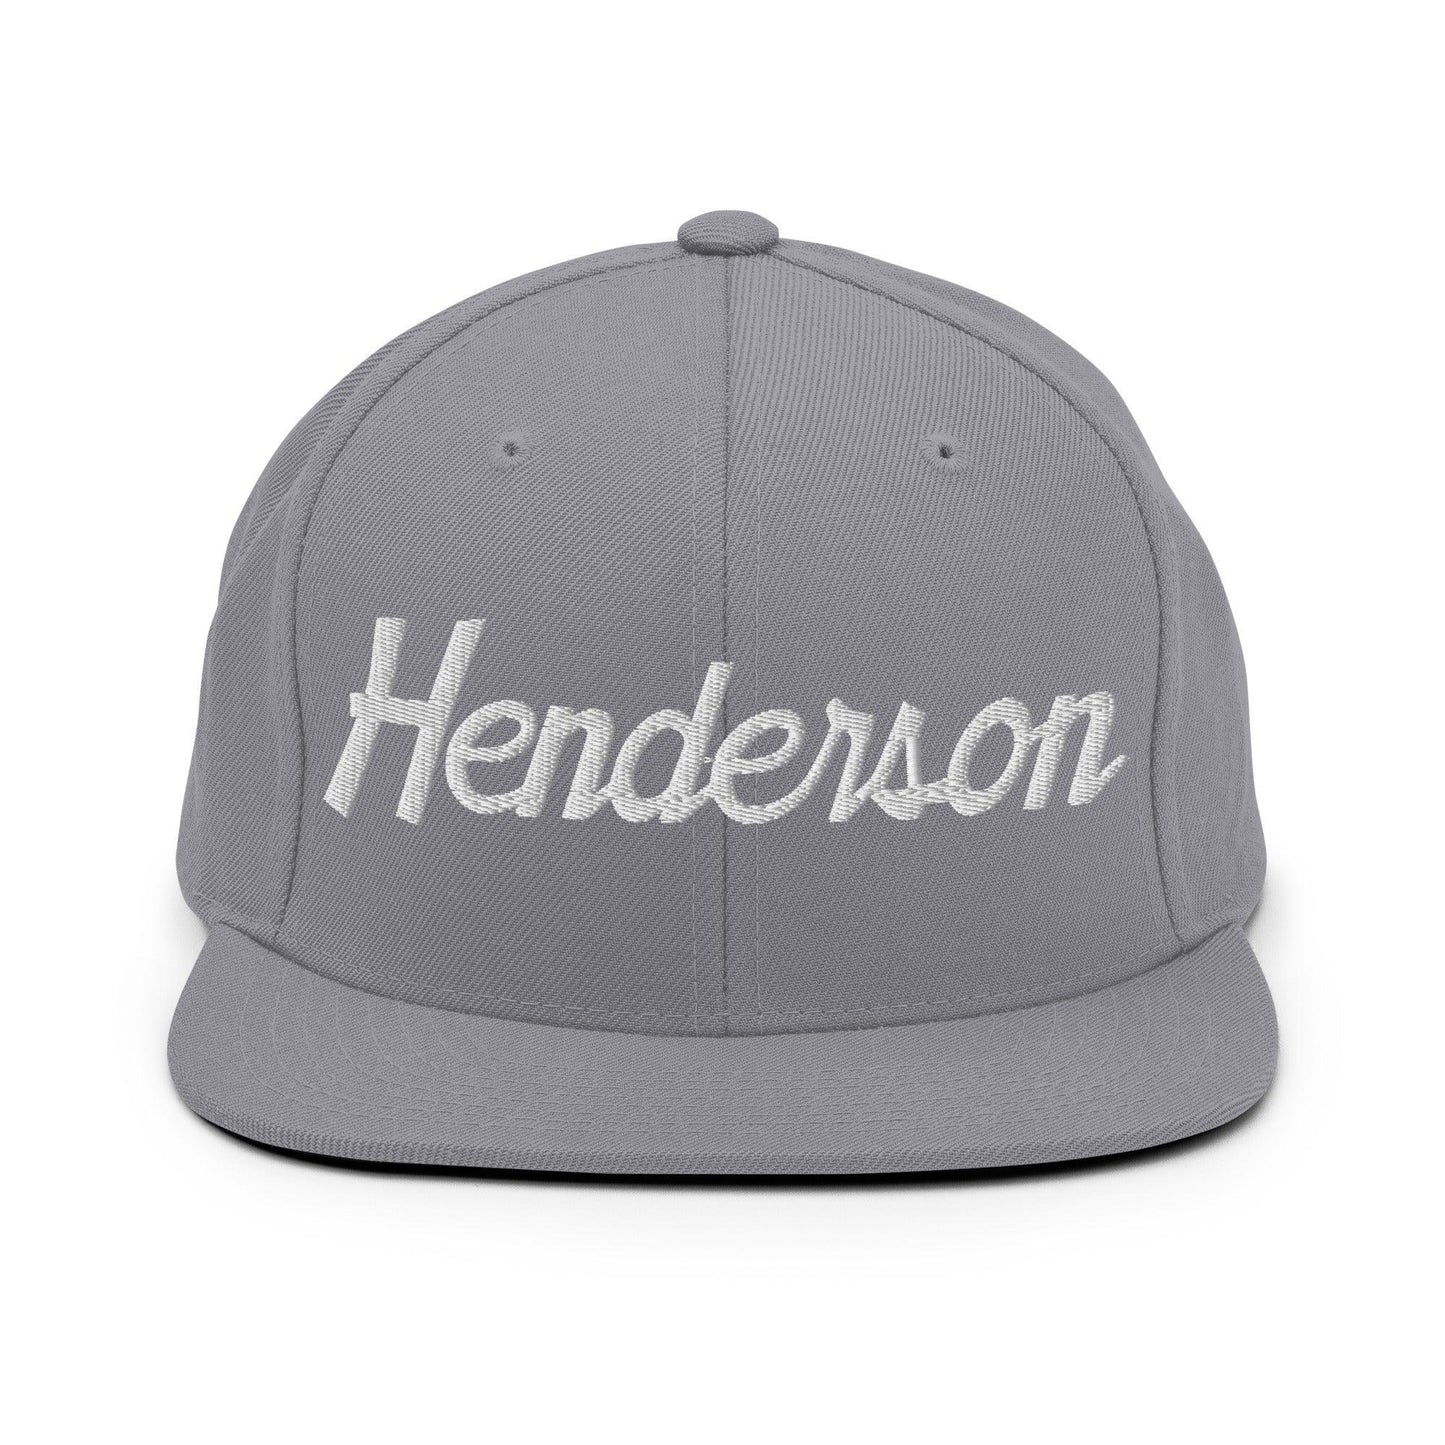 Henderson Script Snapback Hat Silver